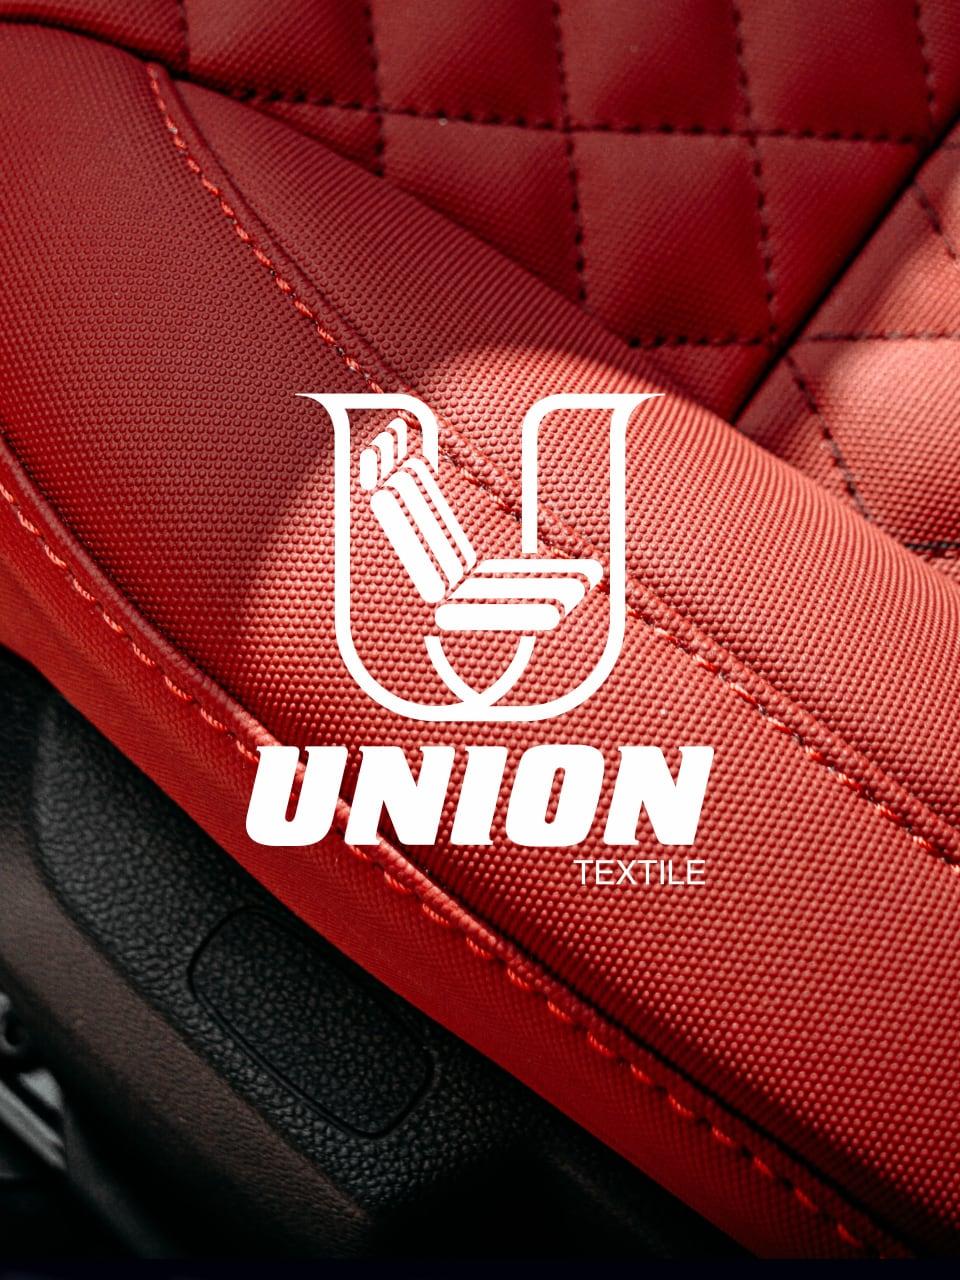 Union Textile